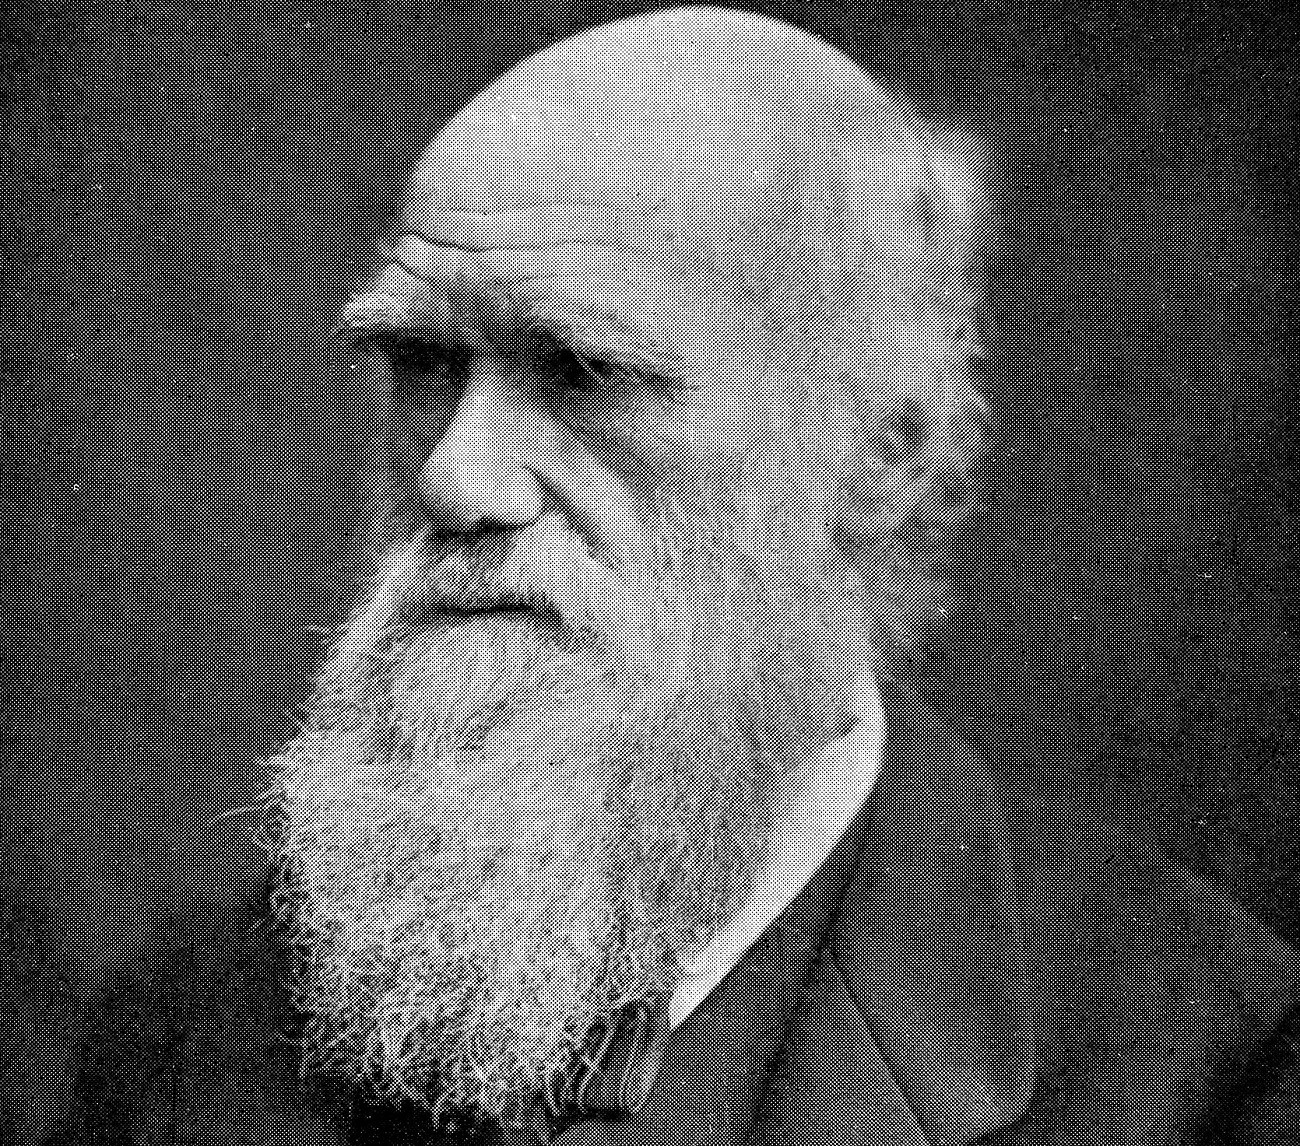 Wielka biblioteka Darwina wreszcie ujawniona. Co czytał słynny przyrodnik?